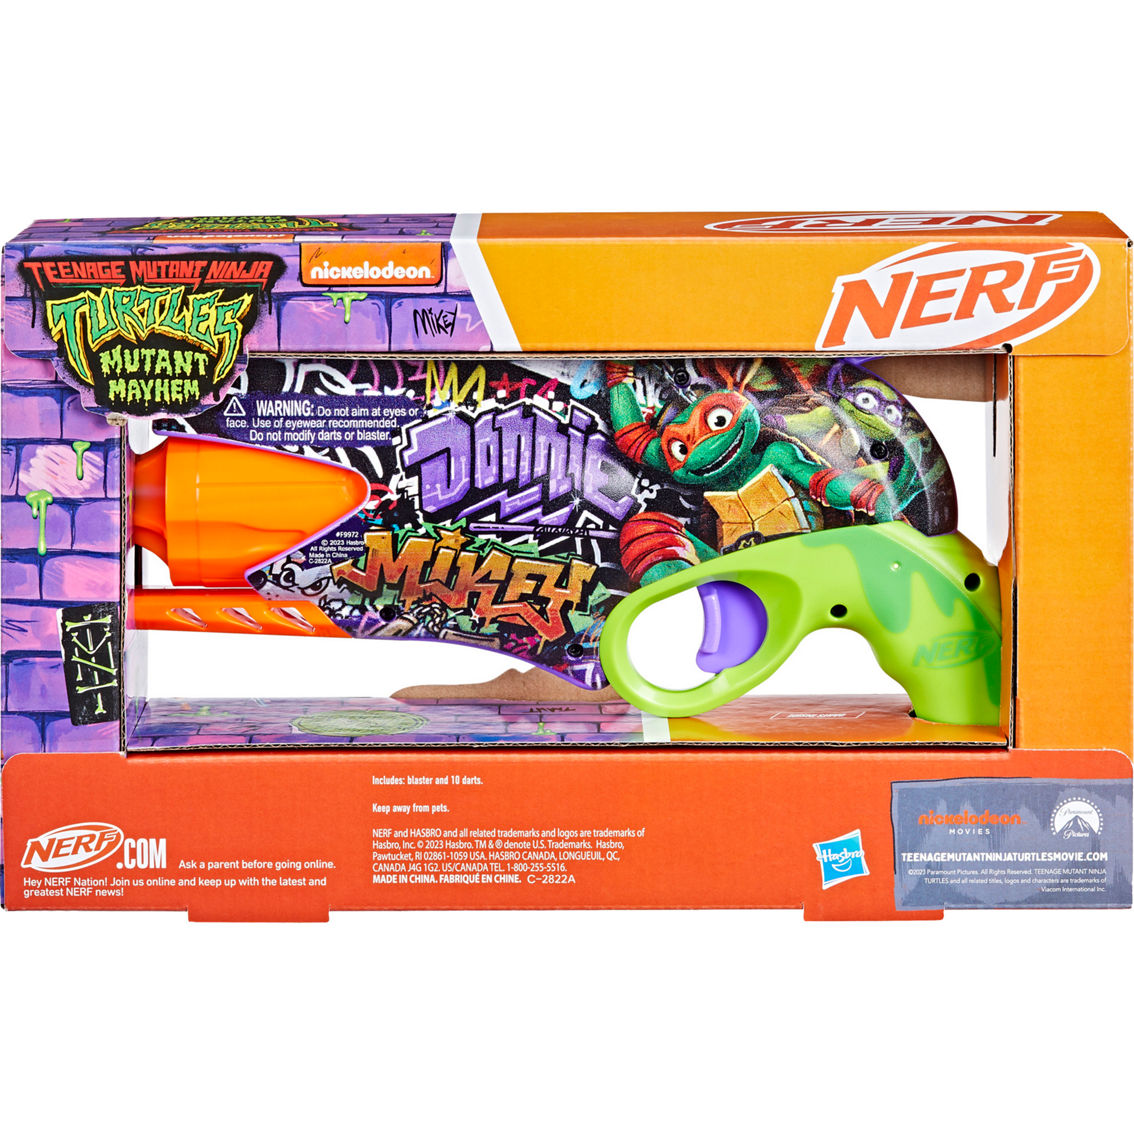 Nerf Teenage Mutant Ninja Turtles Blaster - Image 2 of 3